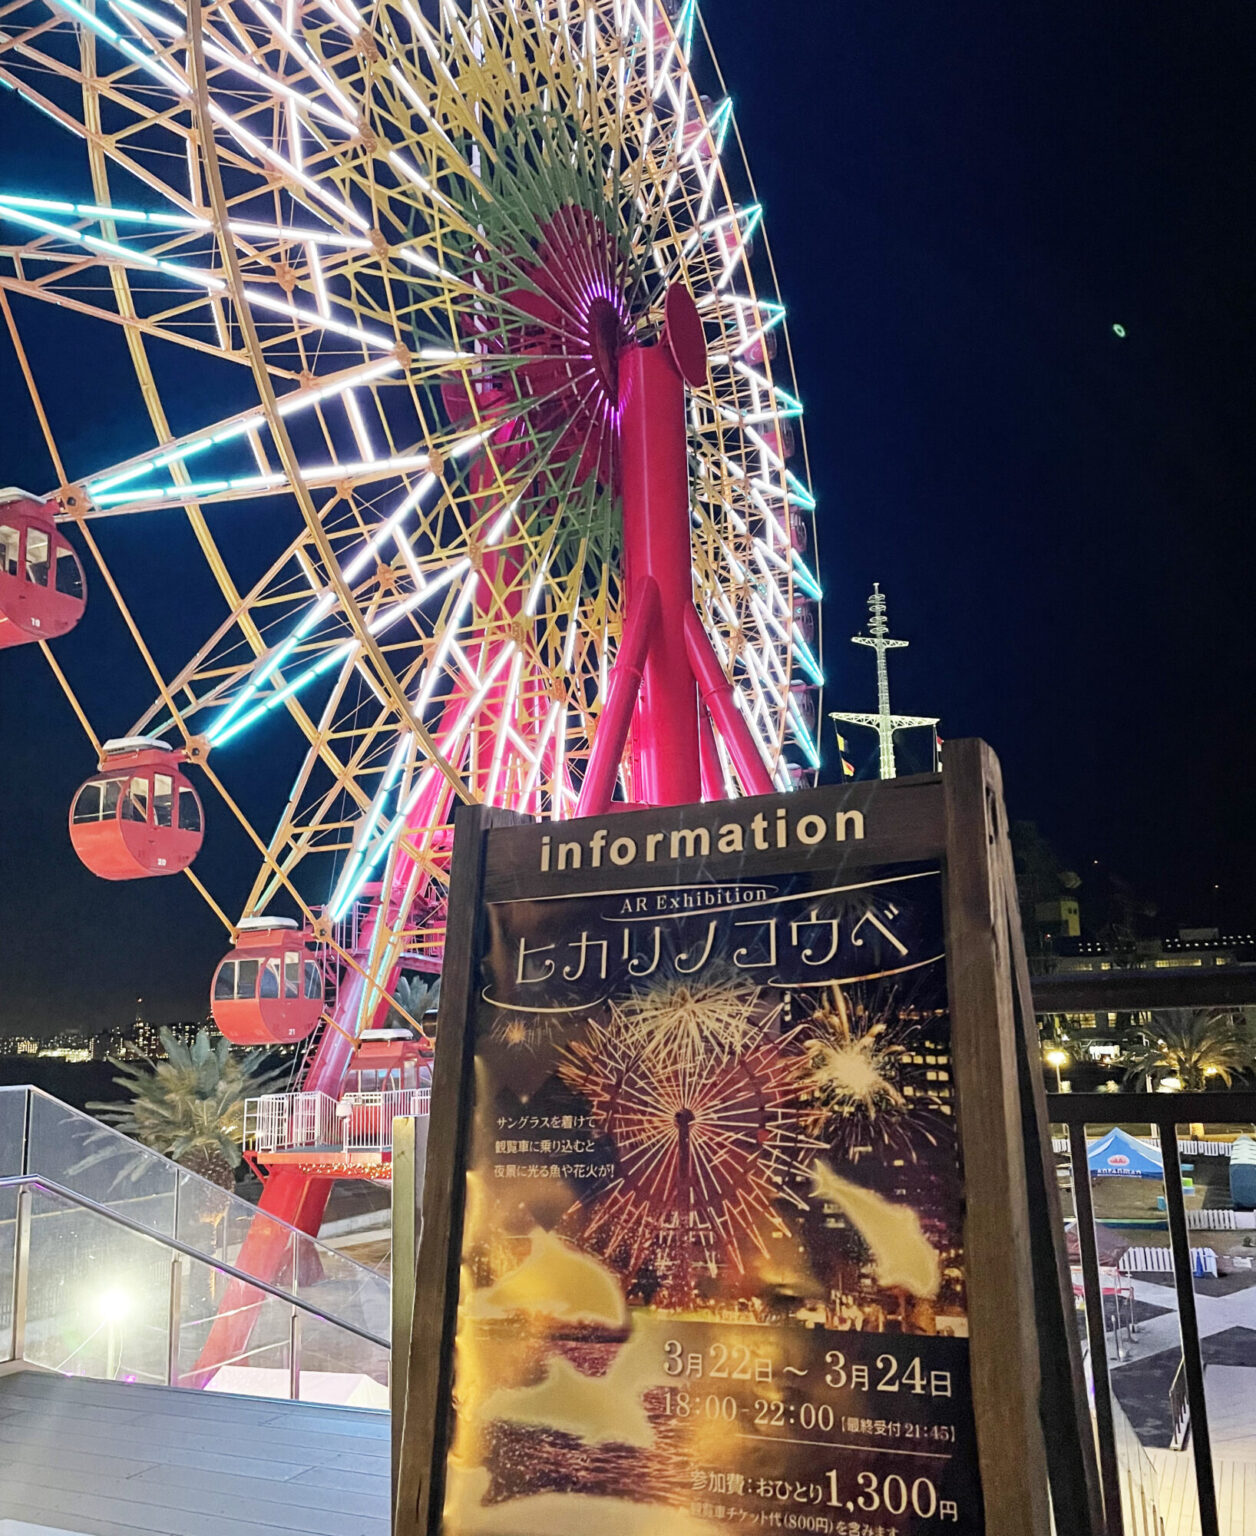 観覧車でARグラス体験と夜景を楽しめるイベント「～AR Exibition～ヒカリノコウベ」が開催！神戸ハーバーランドの期間限定企画